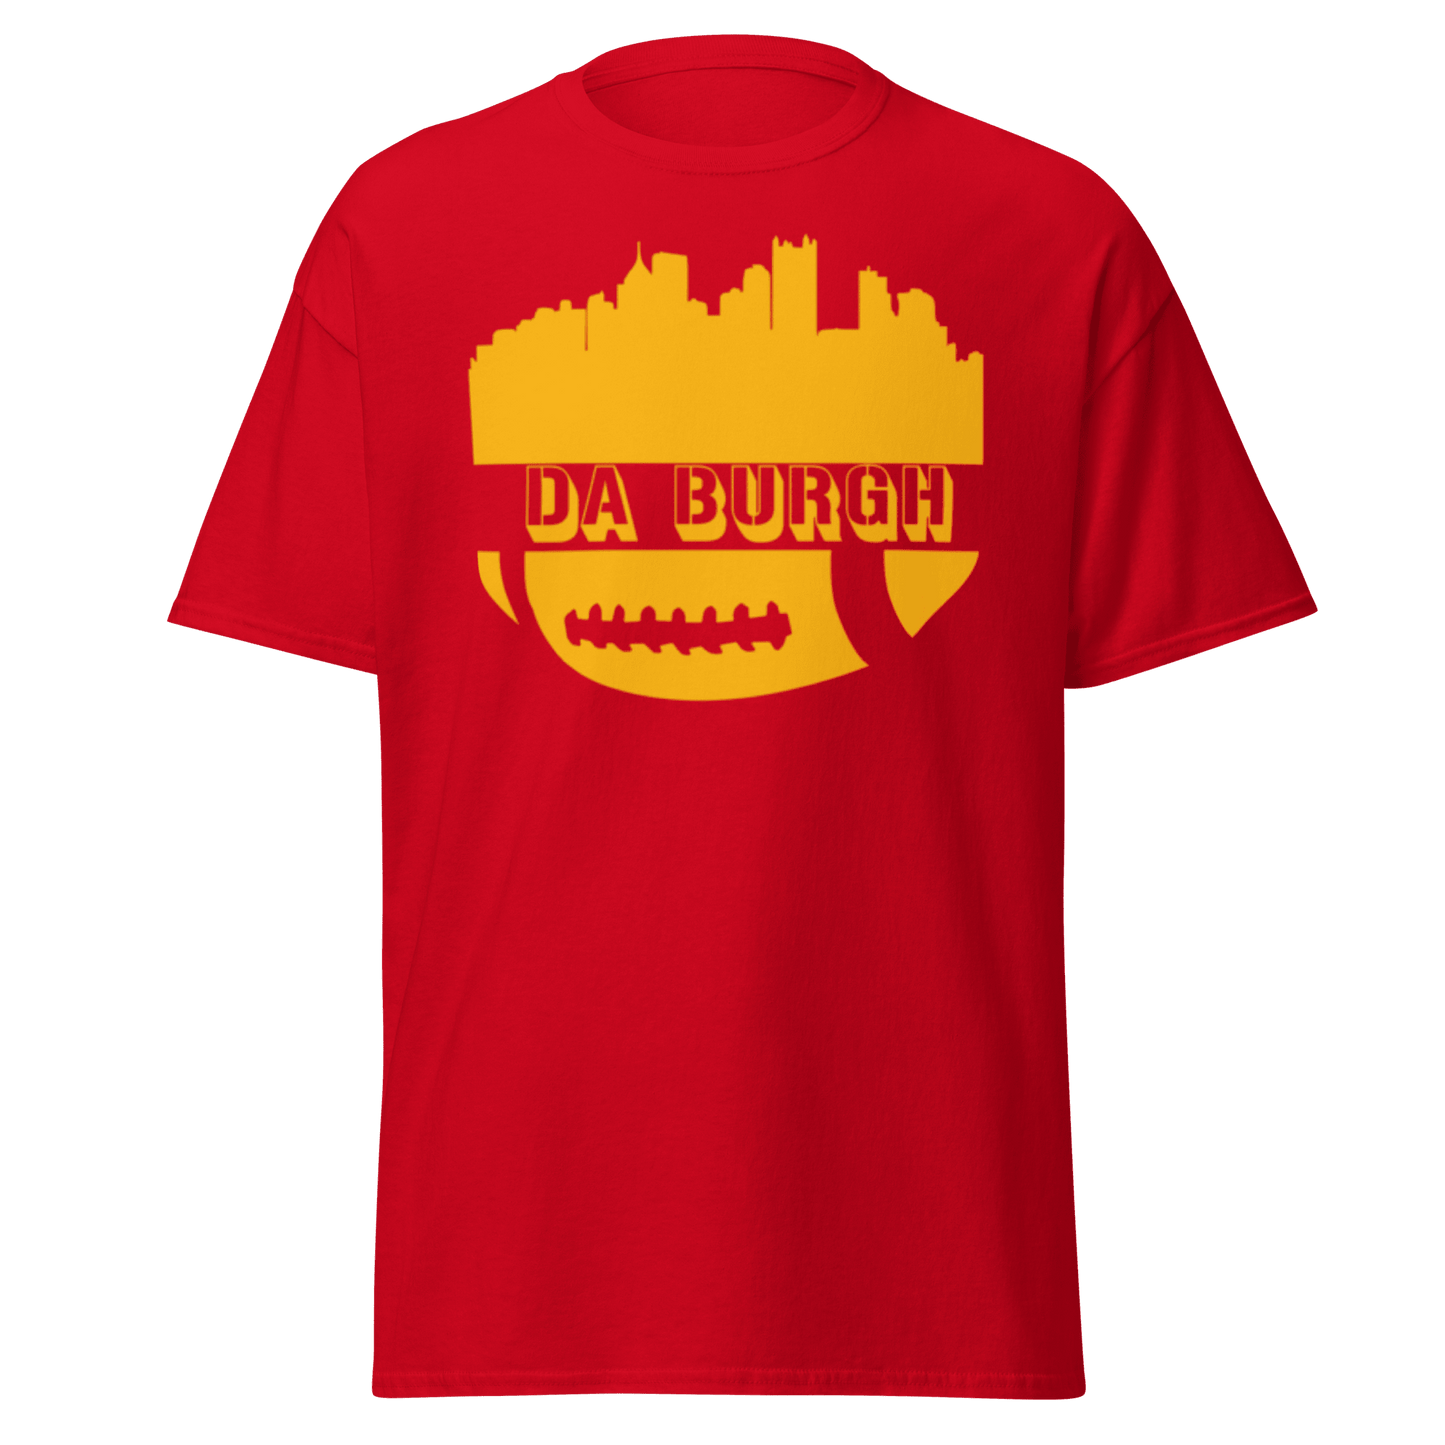 Da Burgh T-Shirt Yinzergear Red S 